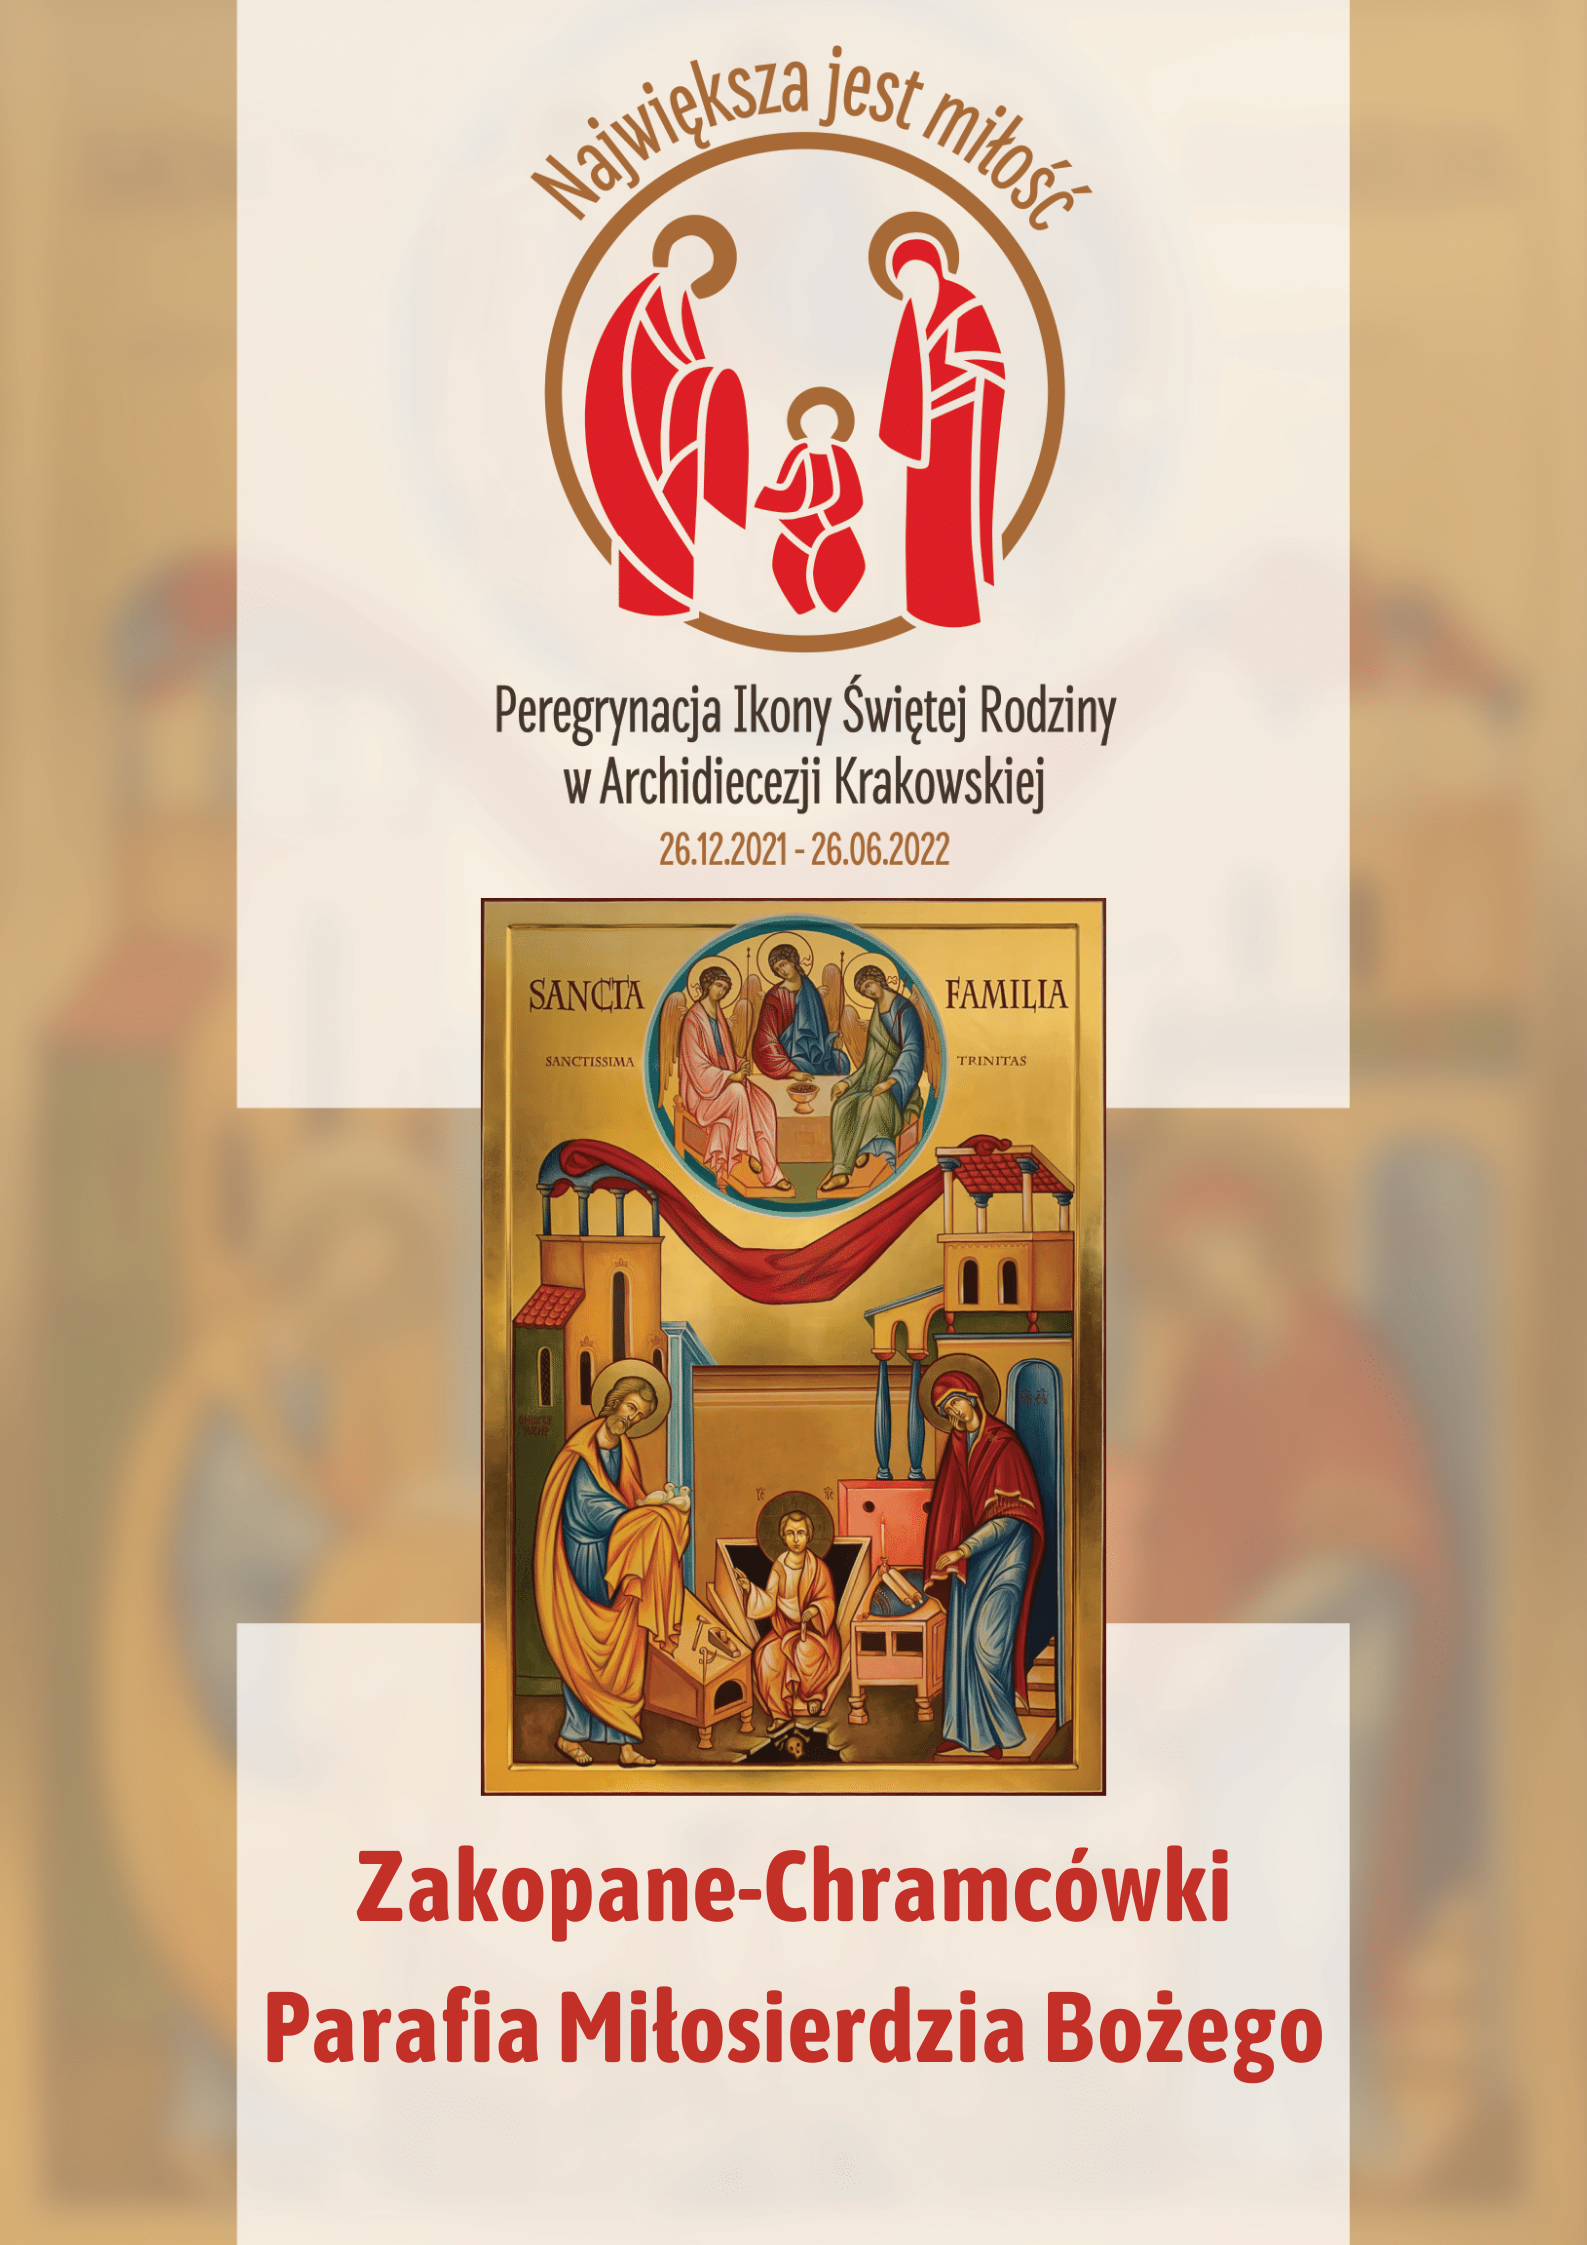 Ikona Świętej Rodziny w parafii Miłosierdzia Bożego na Chramcówkach w Zakopanem